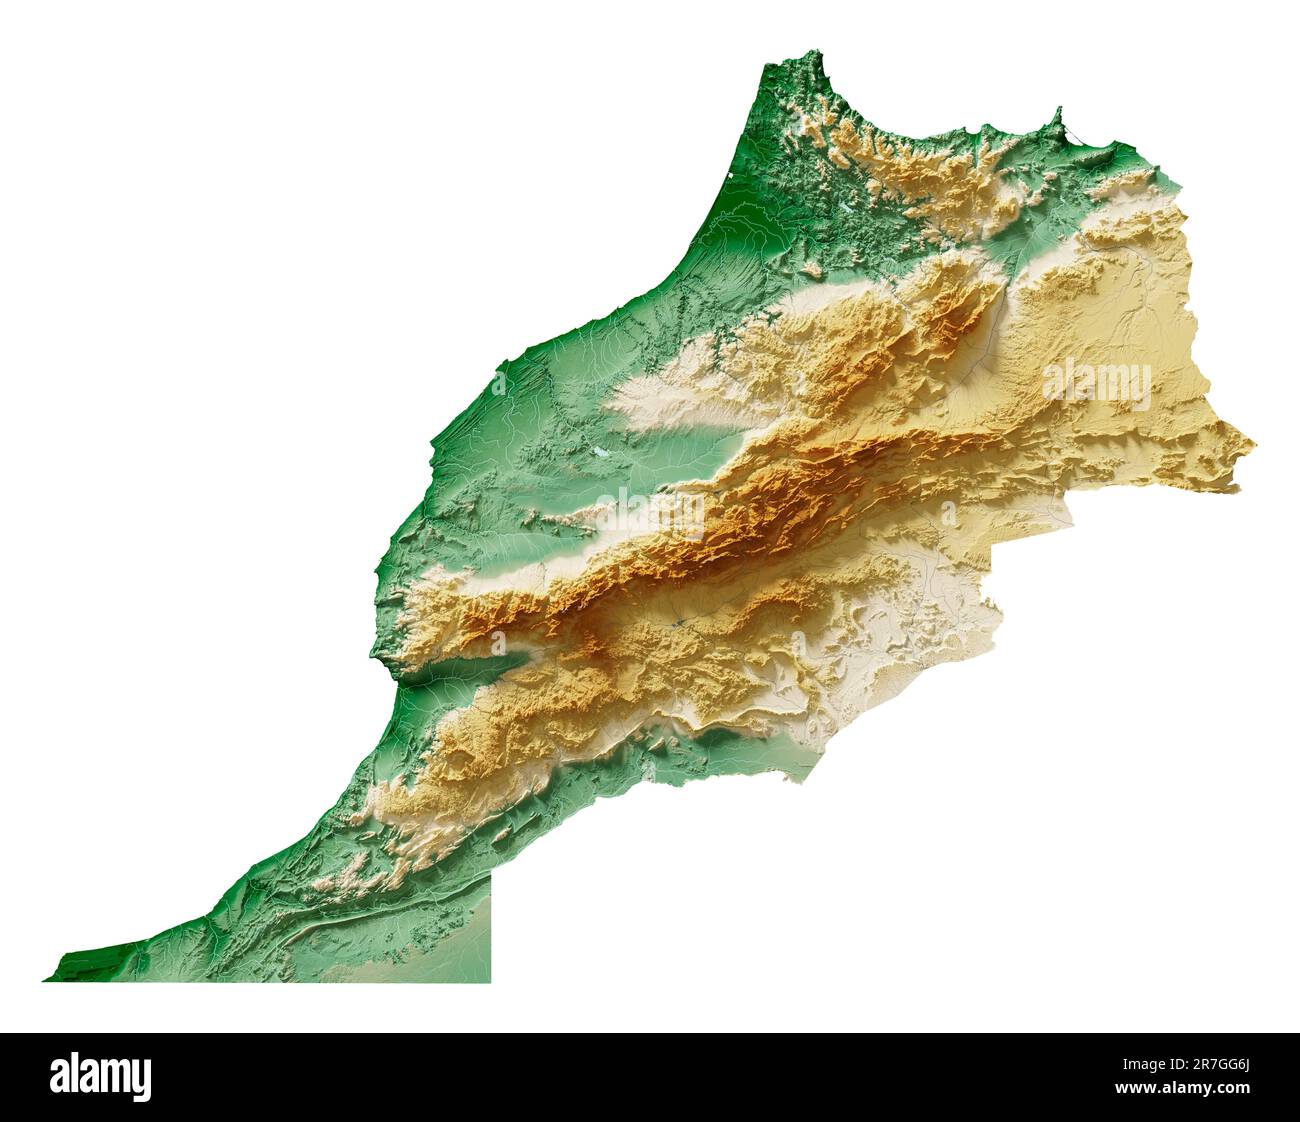 Maroc. Rendu détaillé en 3D d'une carte de relief ombrée avec des rivières et des lacs. Coloré par élévation. Arrière-plan blanc. Créé avec des données satellite. Banque D'Images